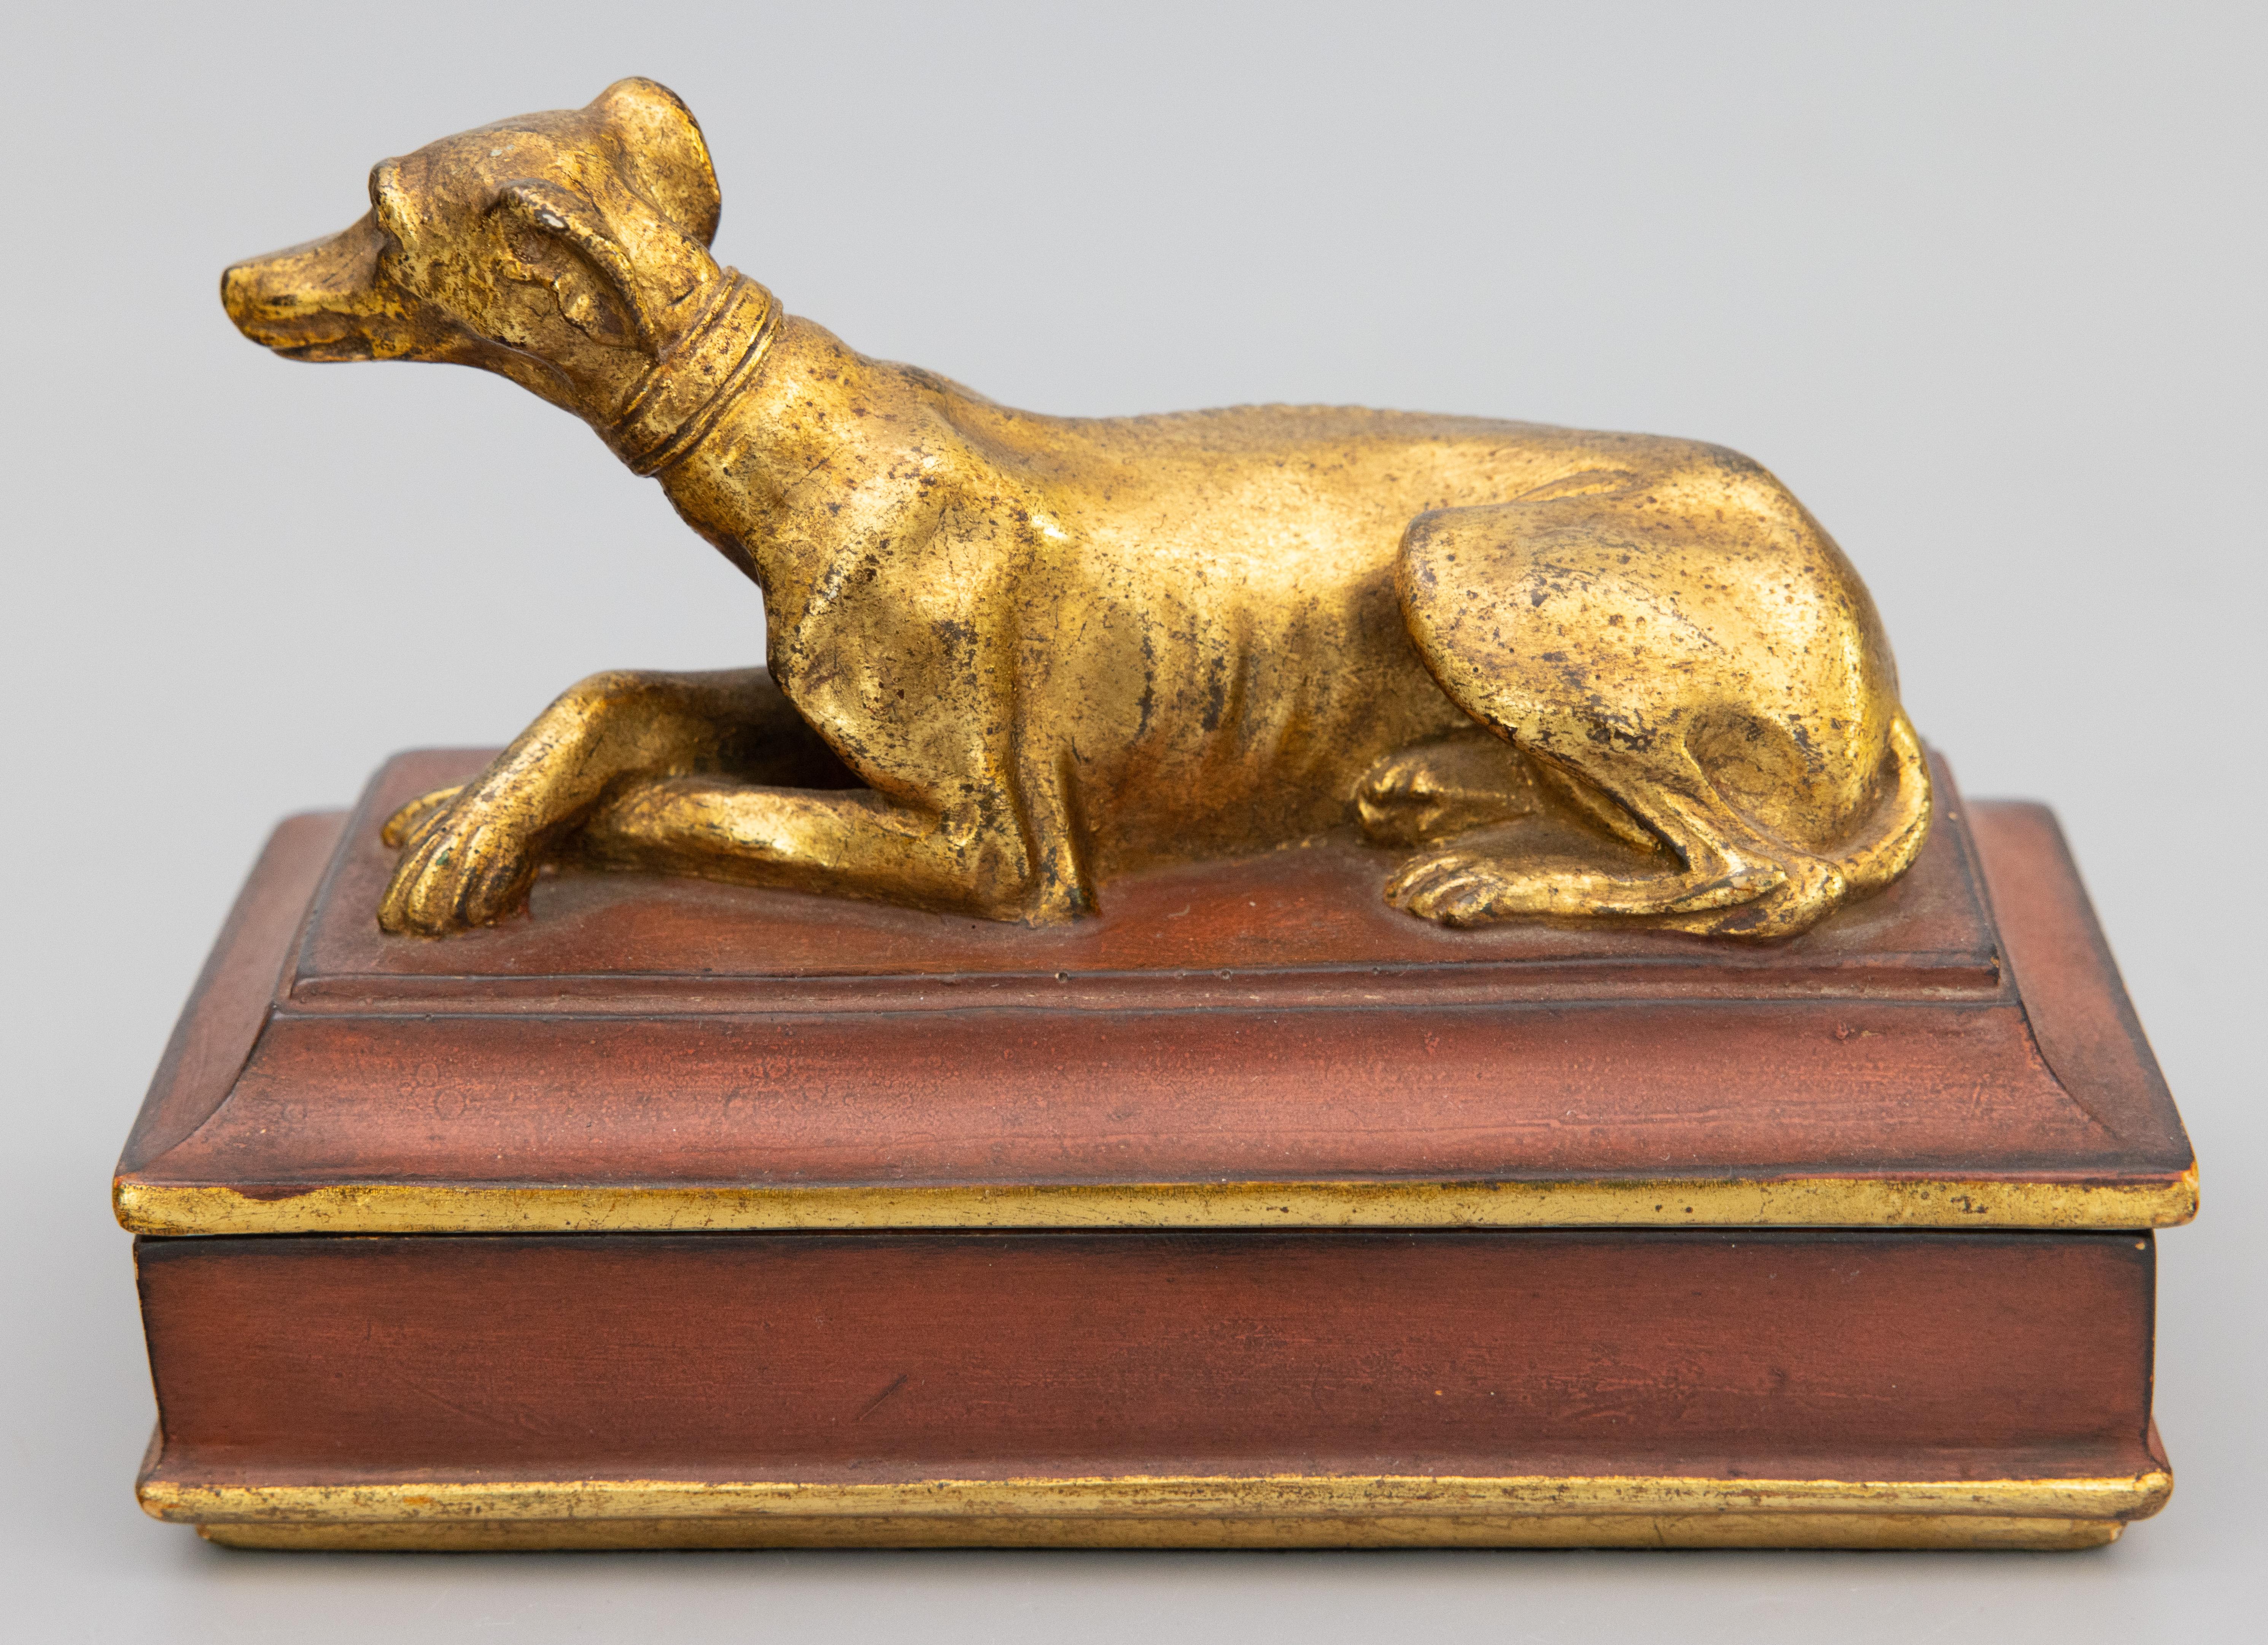 Très belle boîte italienne en plâtre de Borghese avec un charmant chien doré, vers 1930. Cet objet serait du plus bel effet dans un bureau ou comme accessoire de bureau. Il est idéal pour conserver des bijoux ou d'autres objets particuliers, parfait